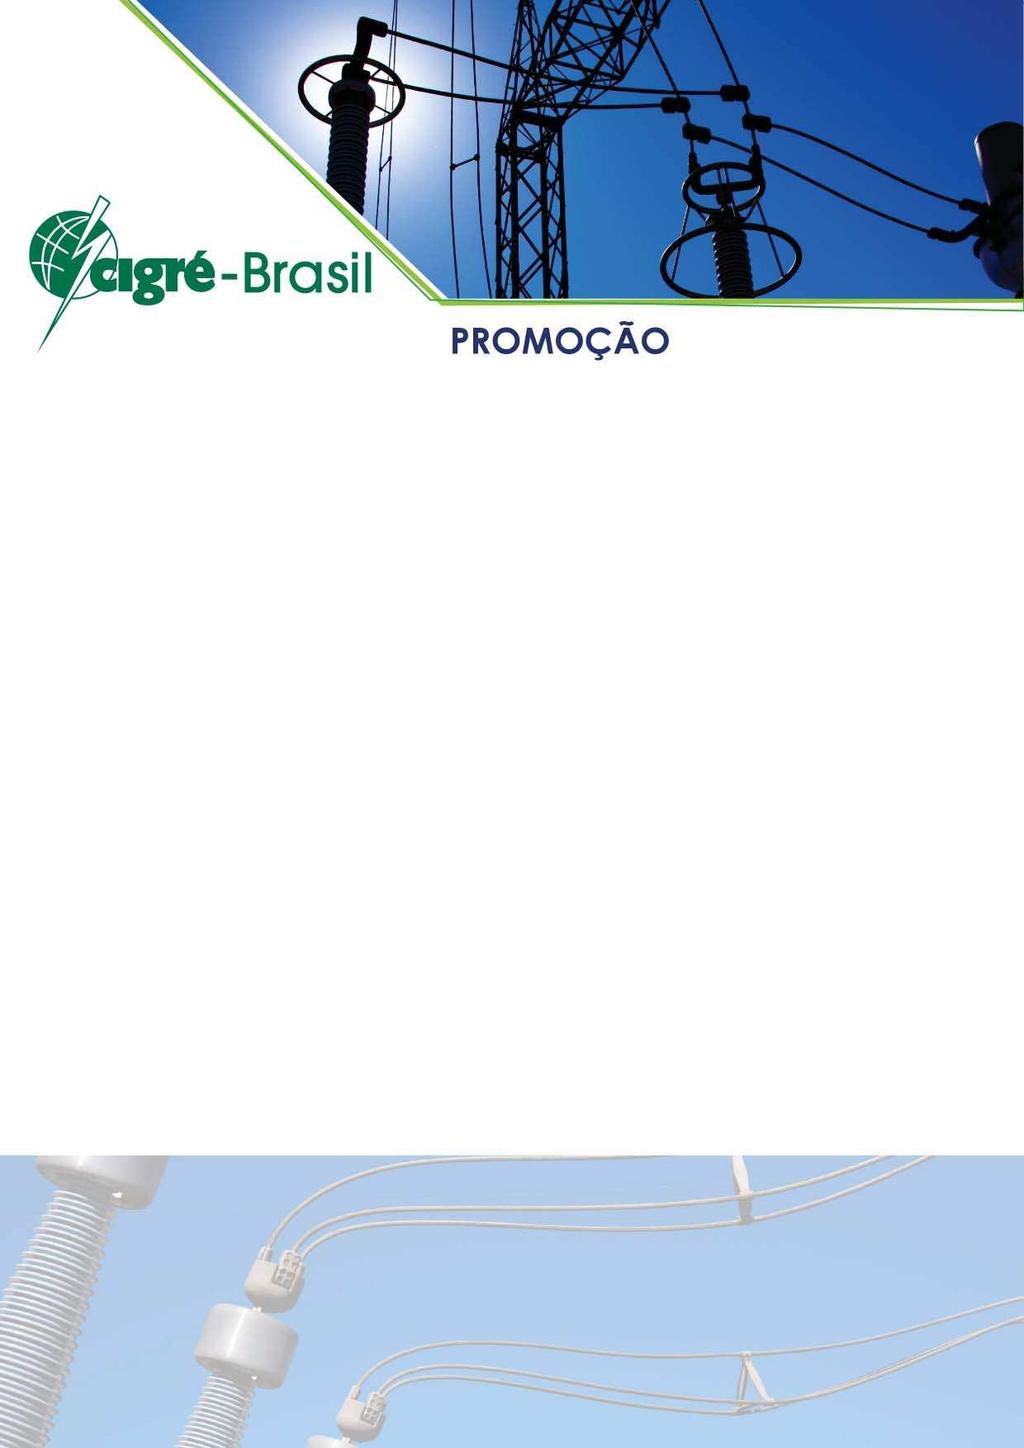 O Comitê Nacional Brasileiro de Produção e Transmissão de Energia Elétrica (Cigré-Brasil) é uma sociedade civil sem fins lucrativos.